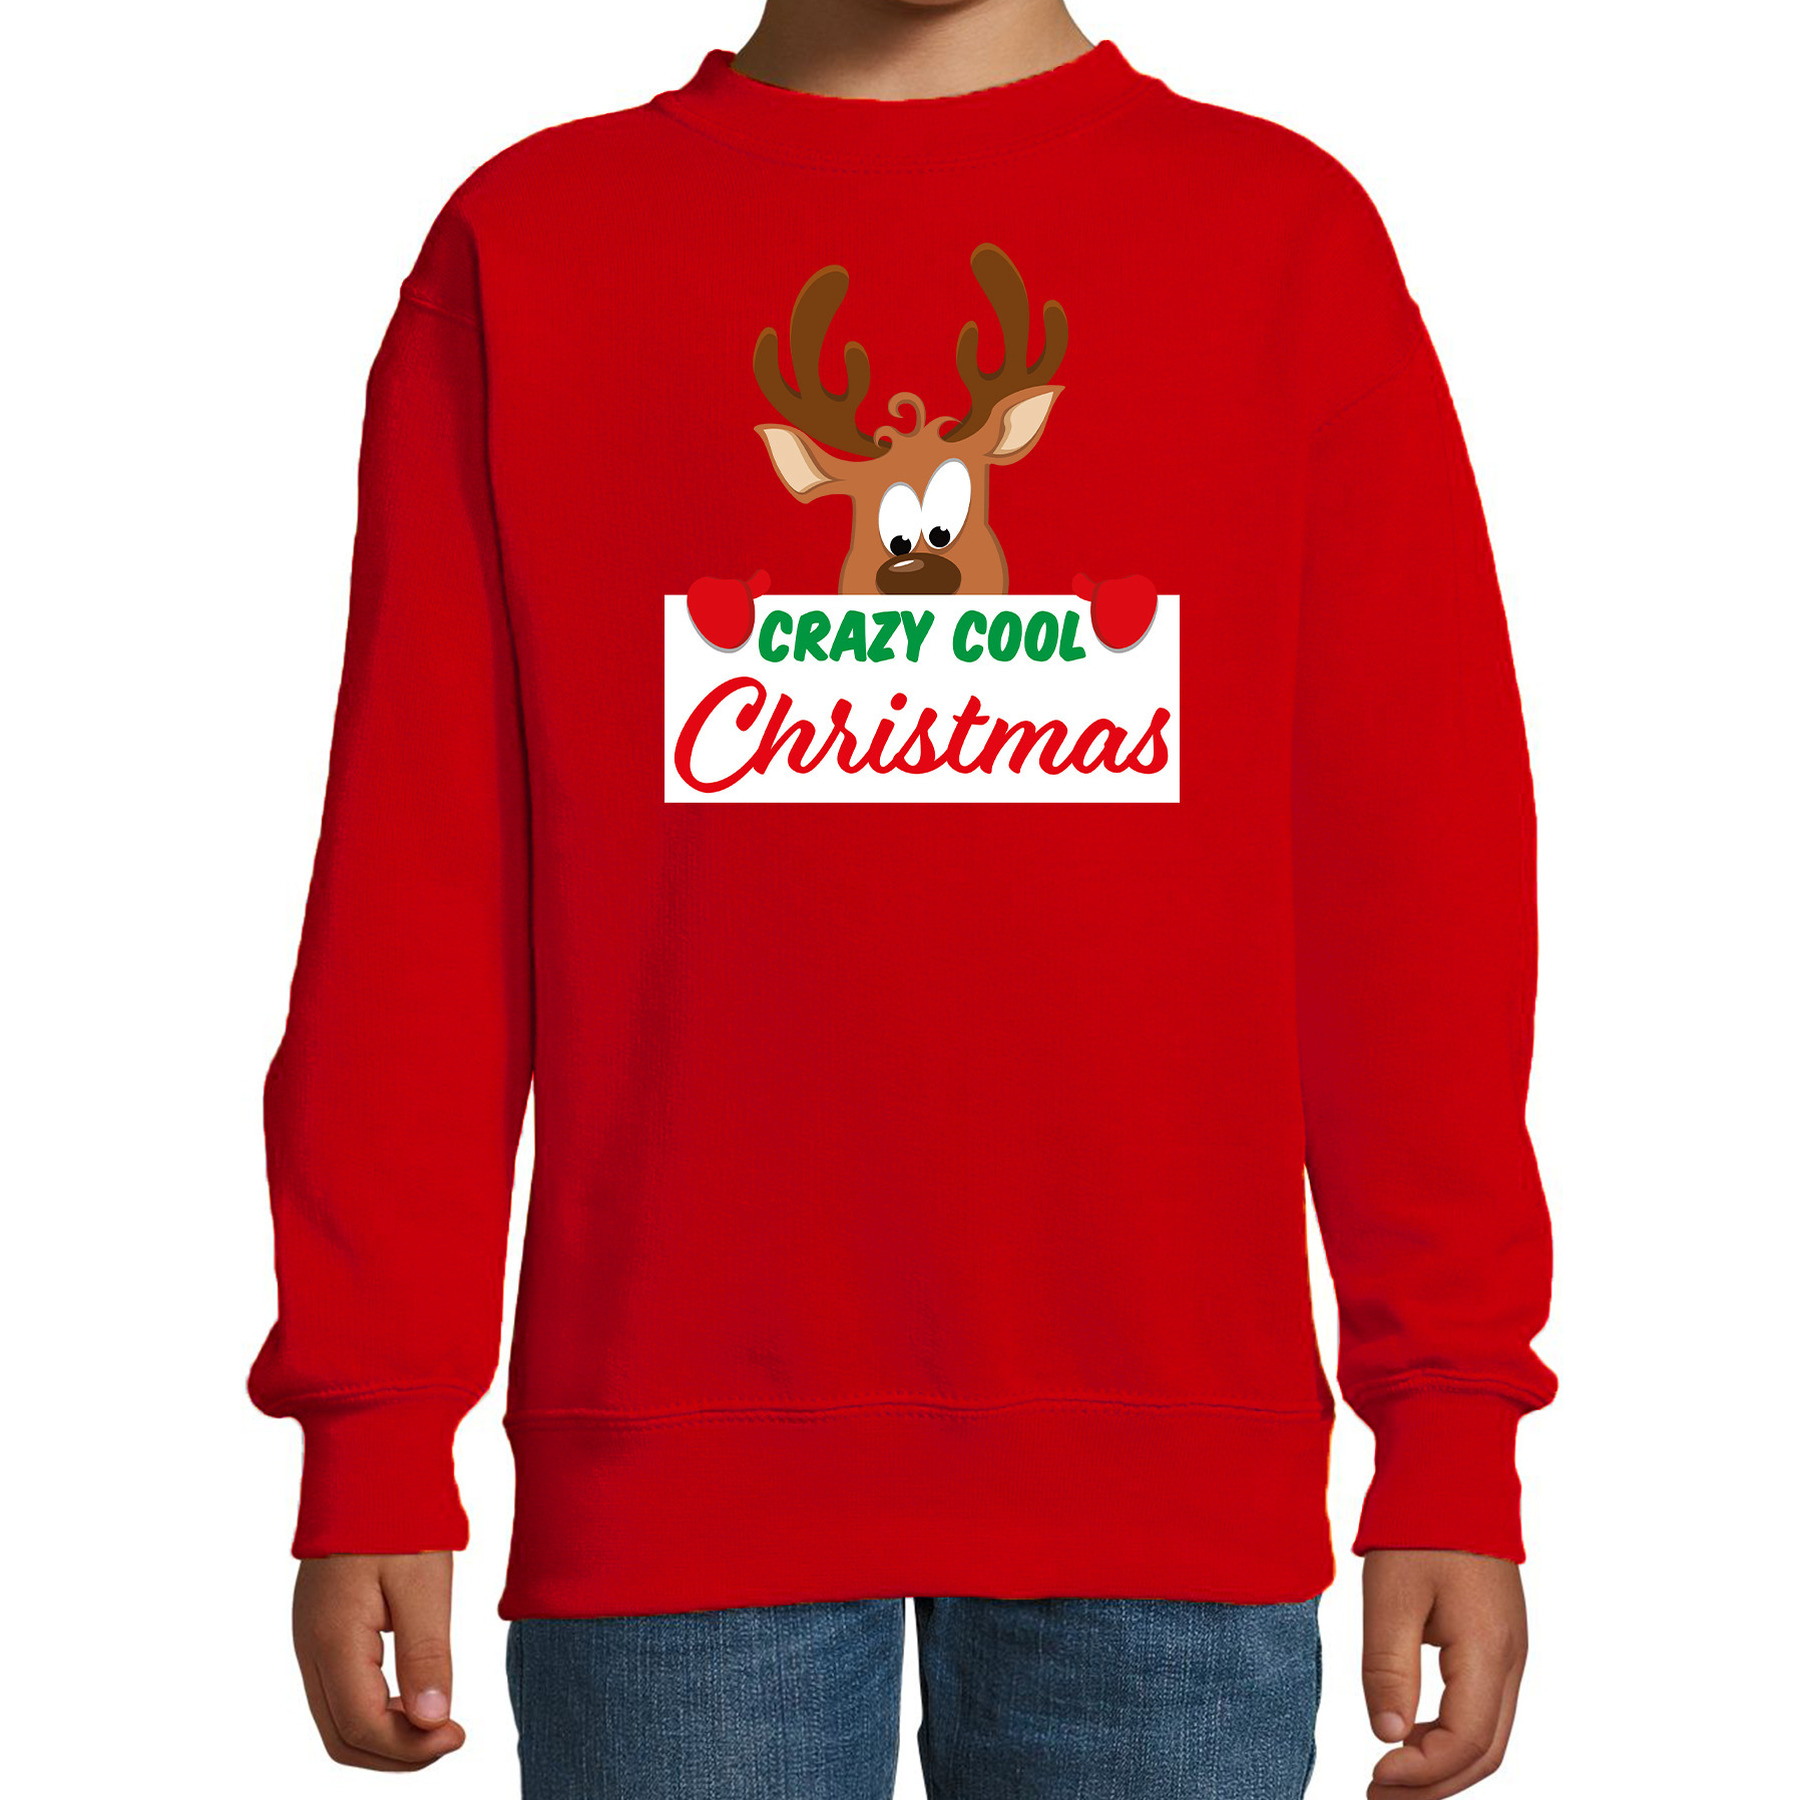 Crazy cool Christmas Kerstsweater-Kersttrui rood voor kinderen